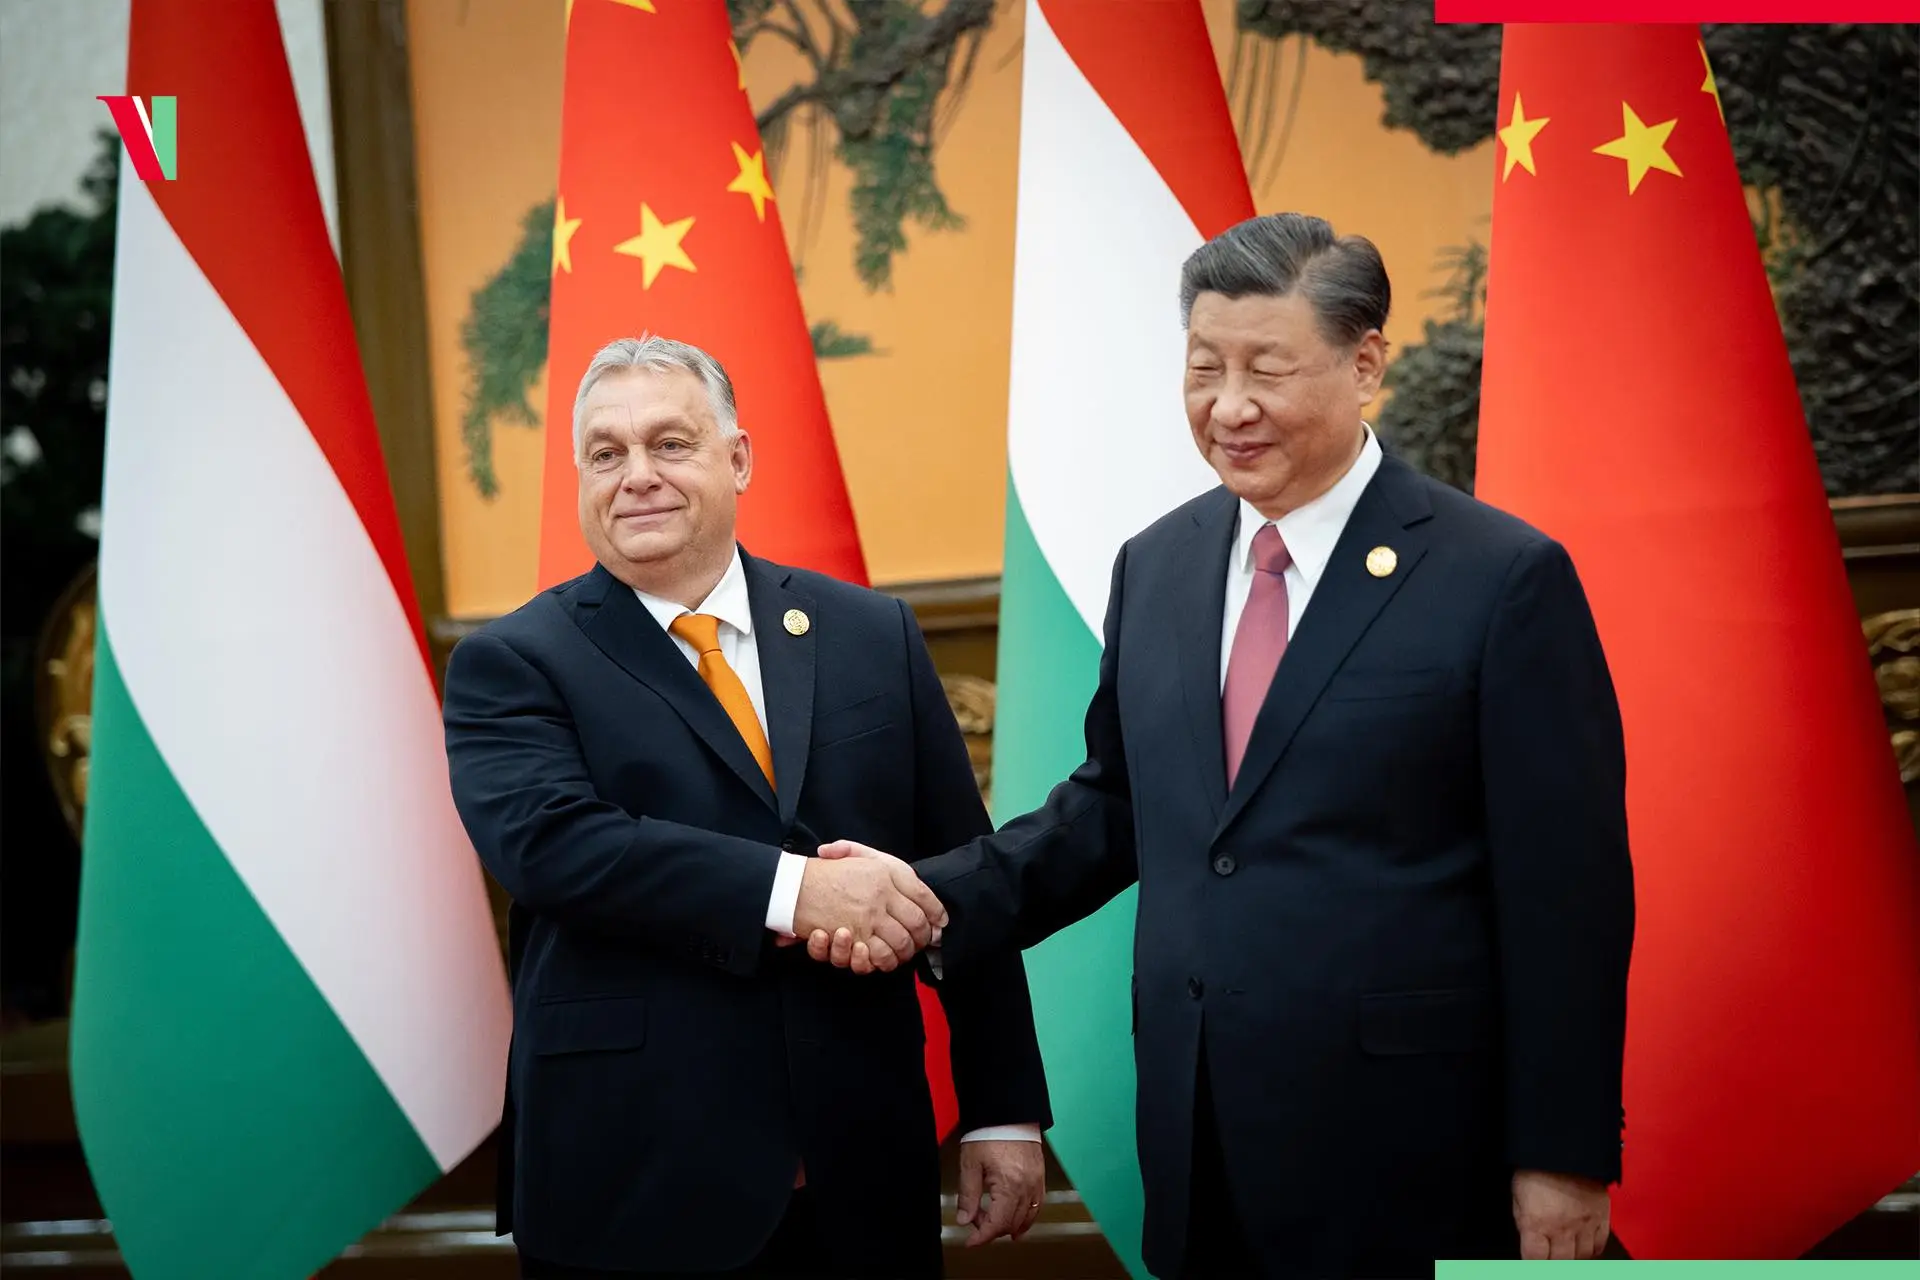 Premierminister Orbán Xi Jinping in Peking